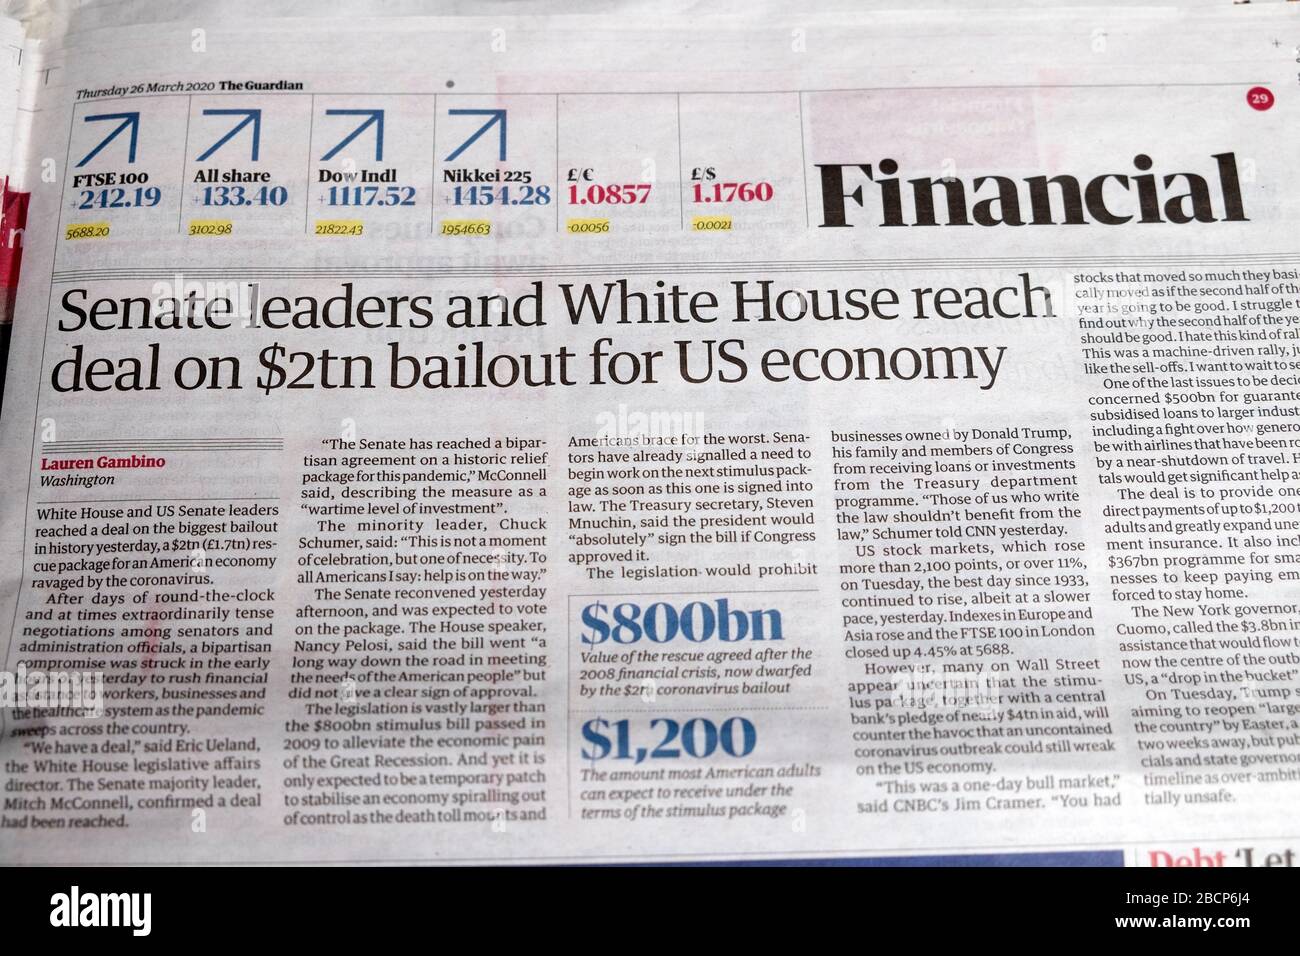 "los líderes de los estados unidos y la Casa Blanca llegan a un acuerdo sobre un rescate de 2 bn de dólares para la economía estadounidense", artículo de prensa en el periódico Guardian 26 de marzo de 2020 Londres, Reino Unido Foto de stock